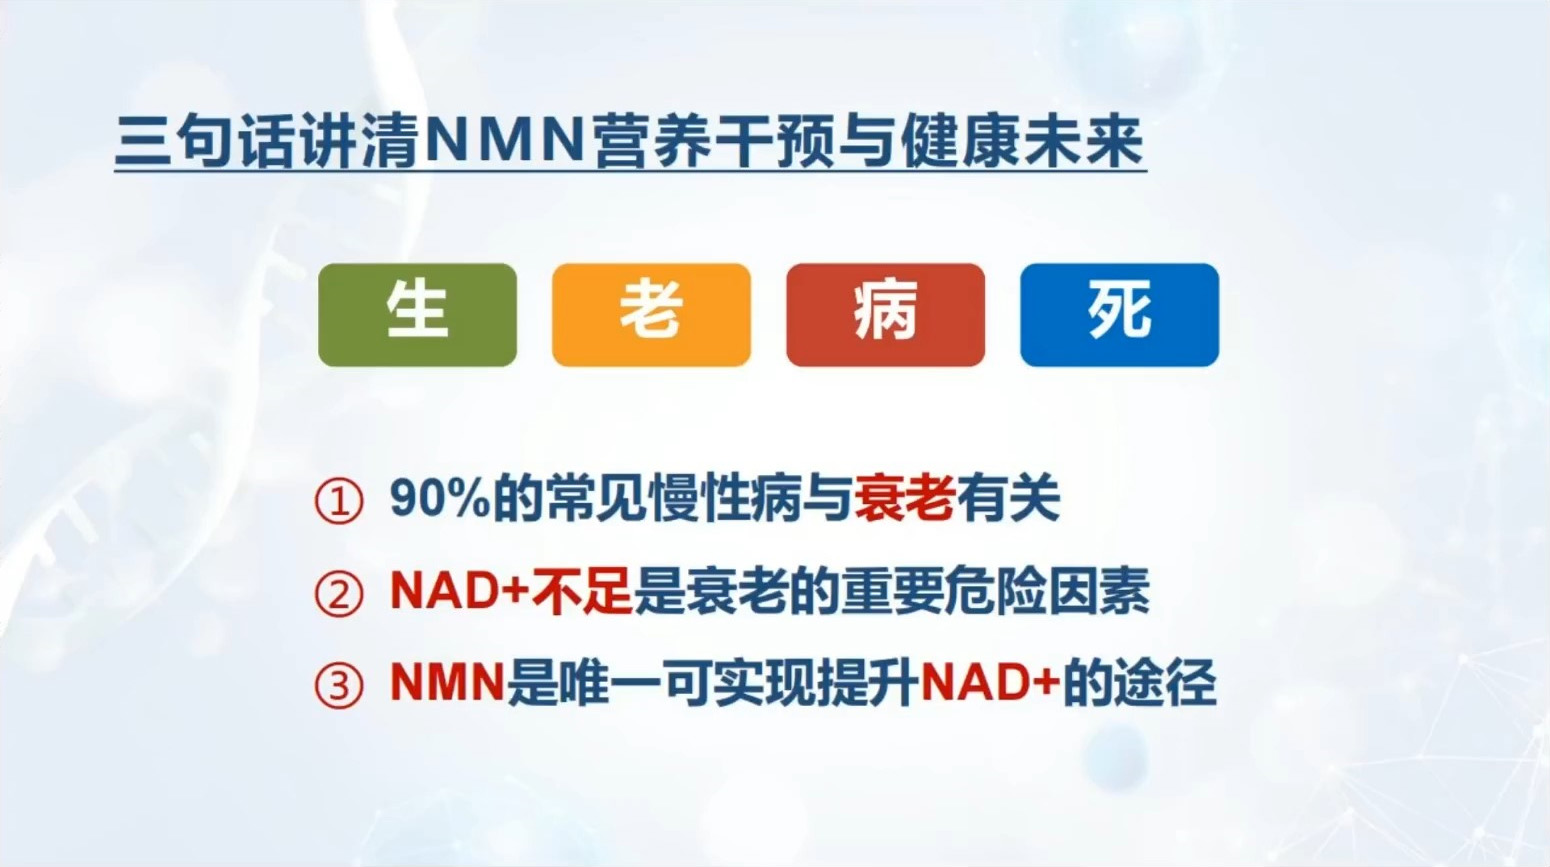 三句话讲清NMN营养干预与健康未来